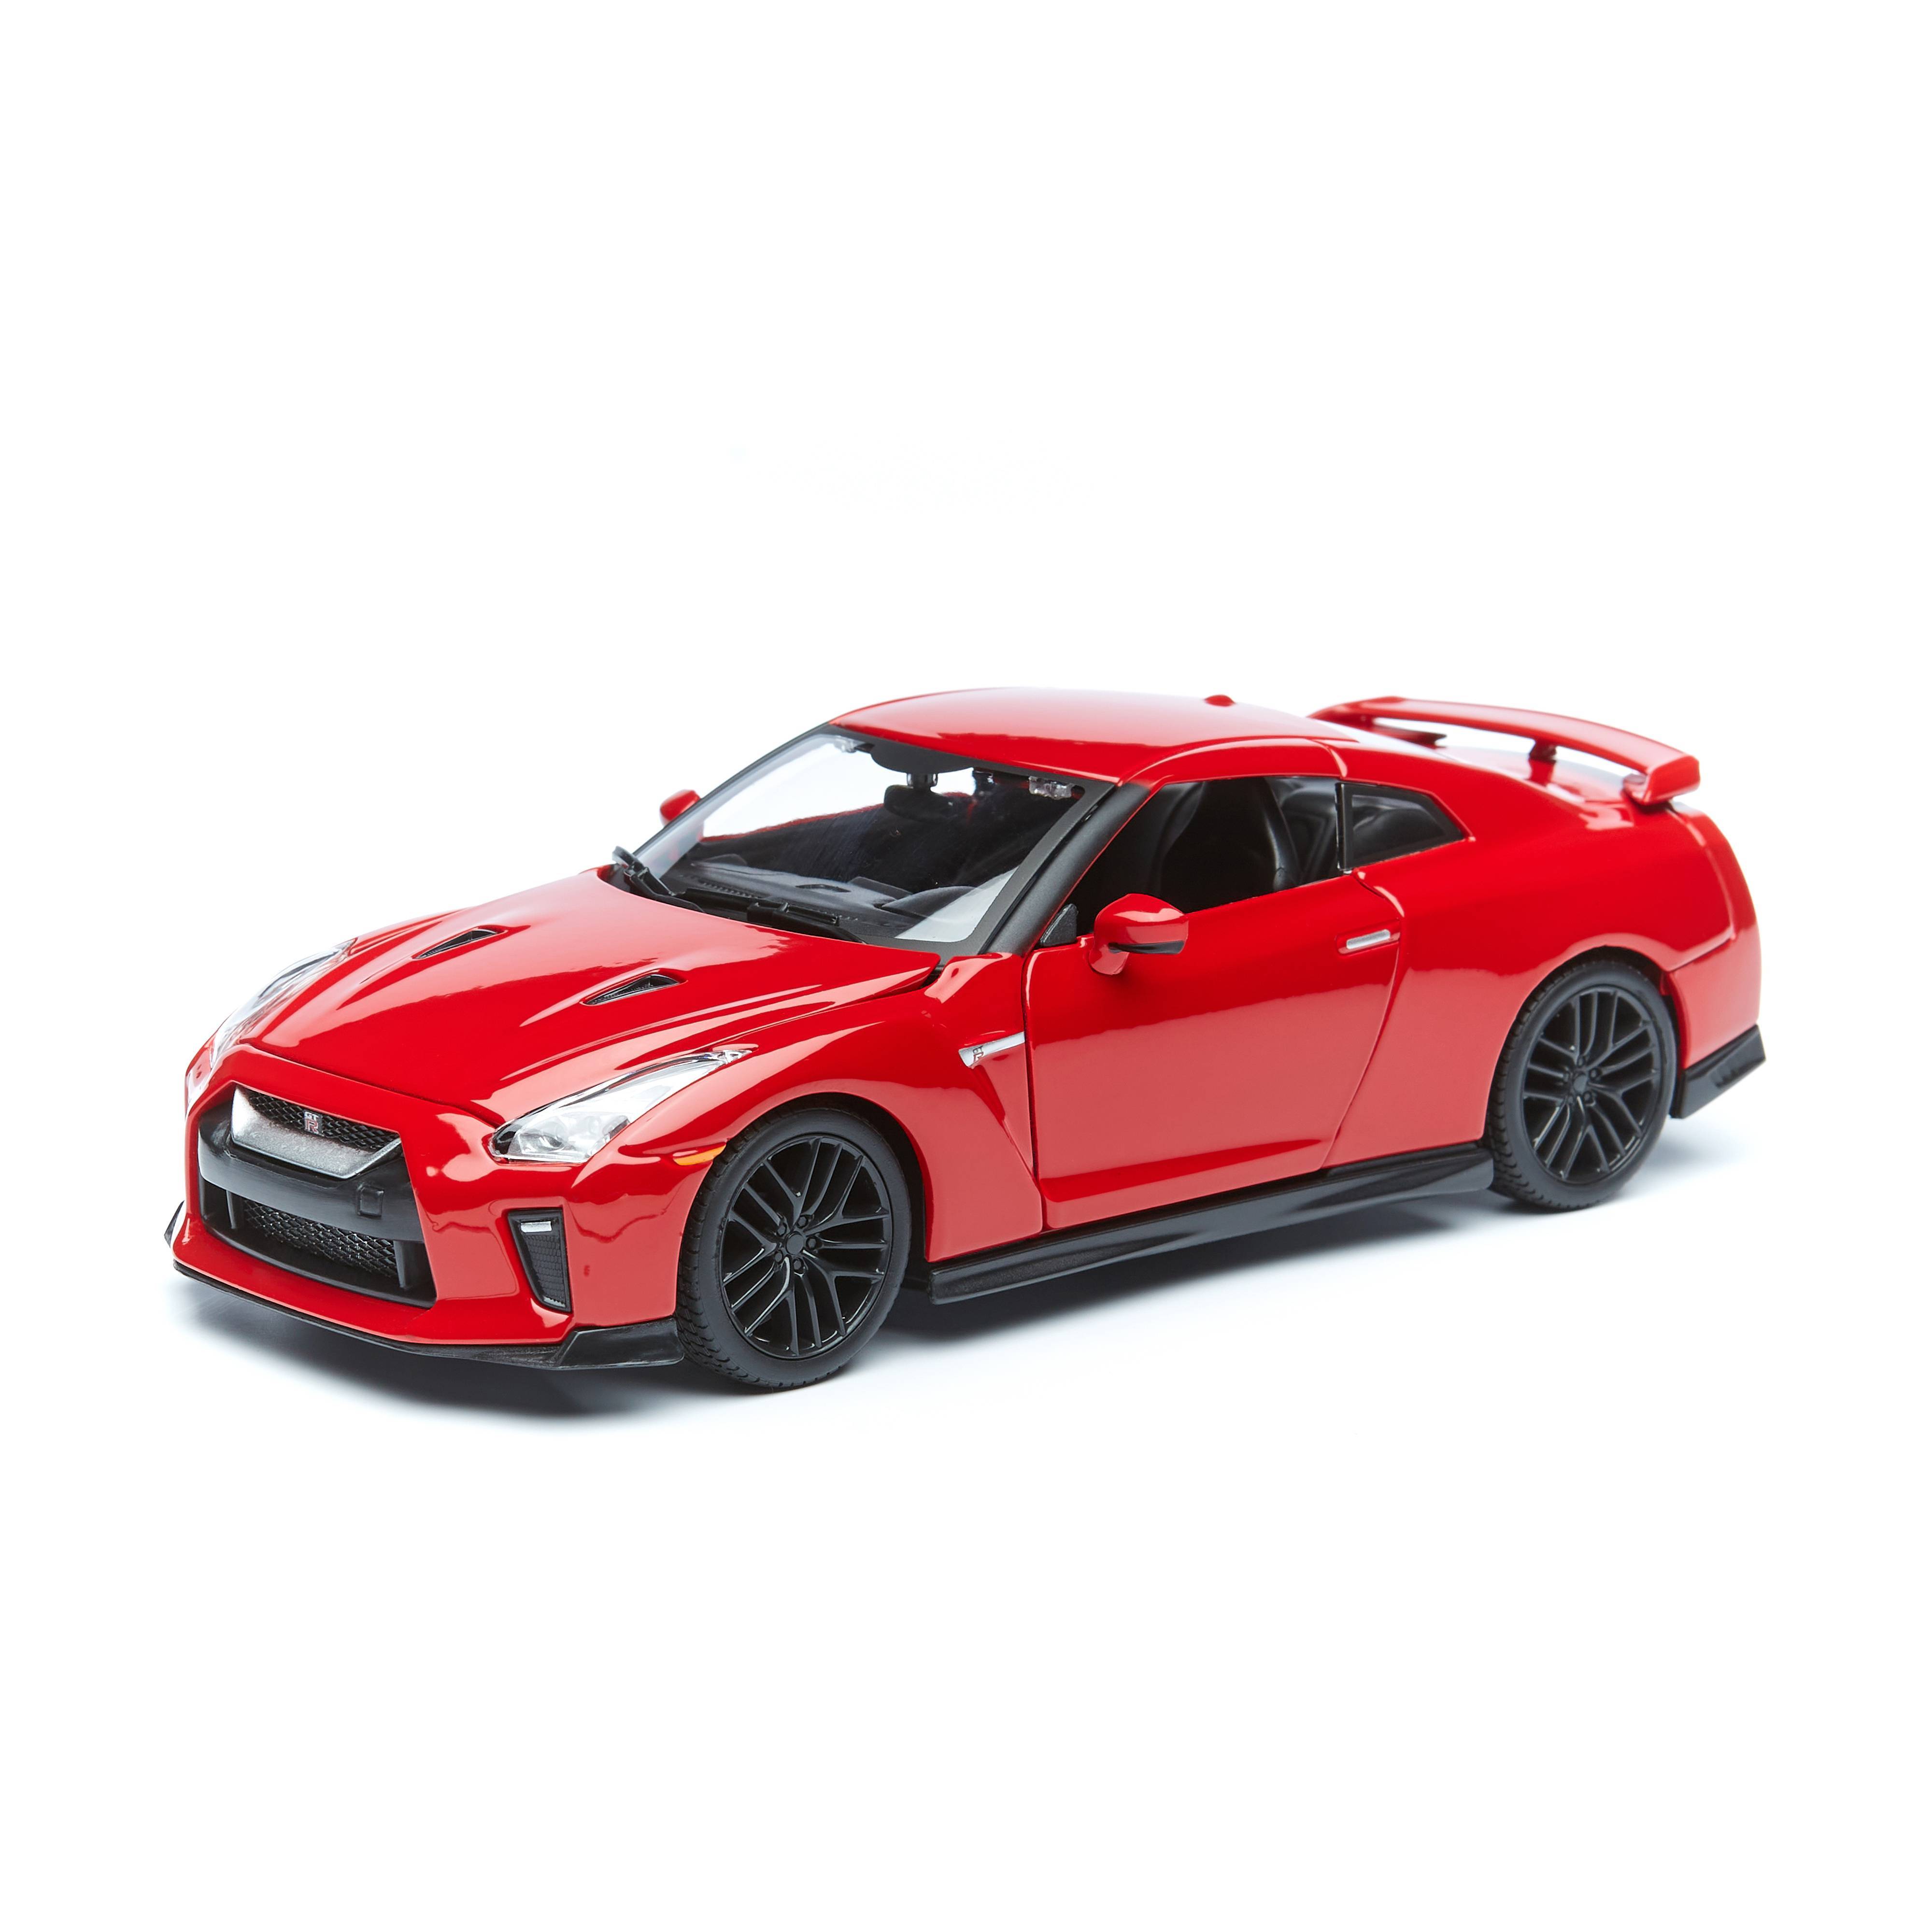 Машинка металлическая Bburago 2017 Nissan GT-R, 1:24, красный машинка металлическая 1 18 bburago lamborghini sian fkp 37 18 11046 rd